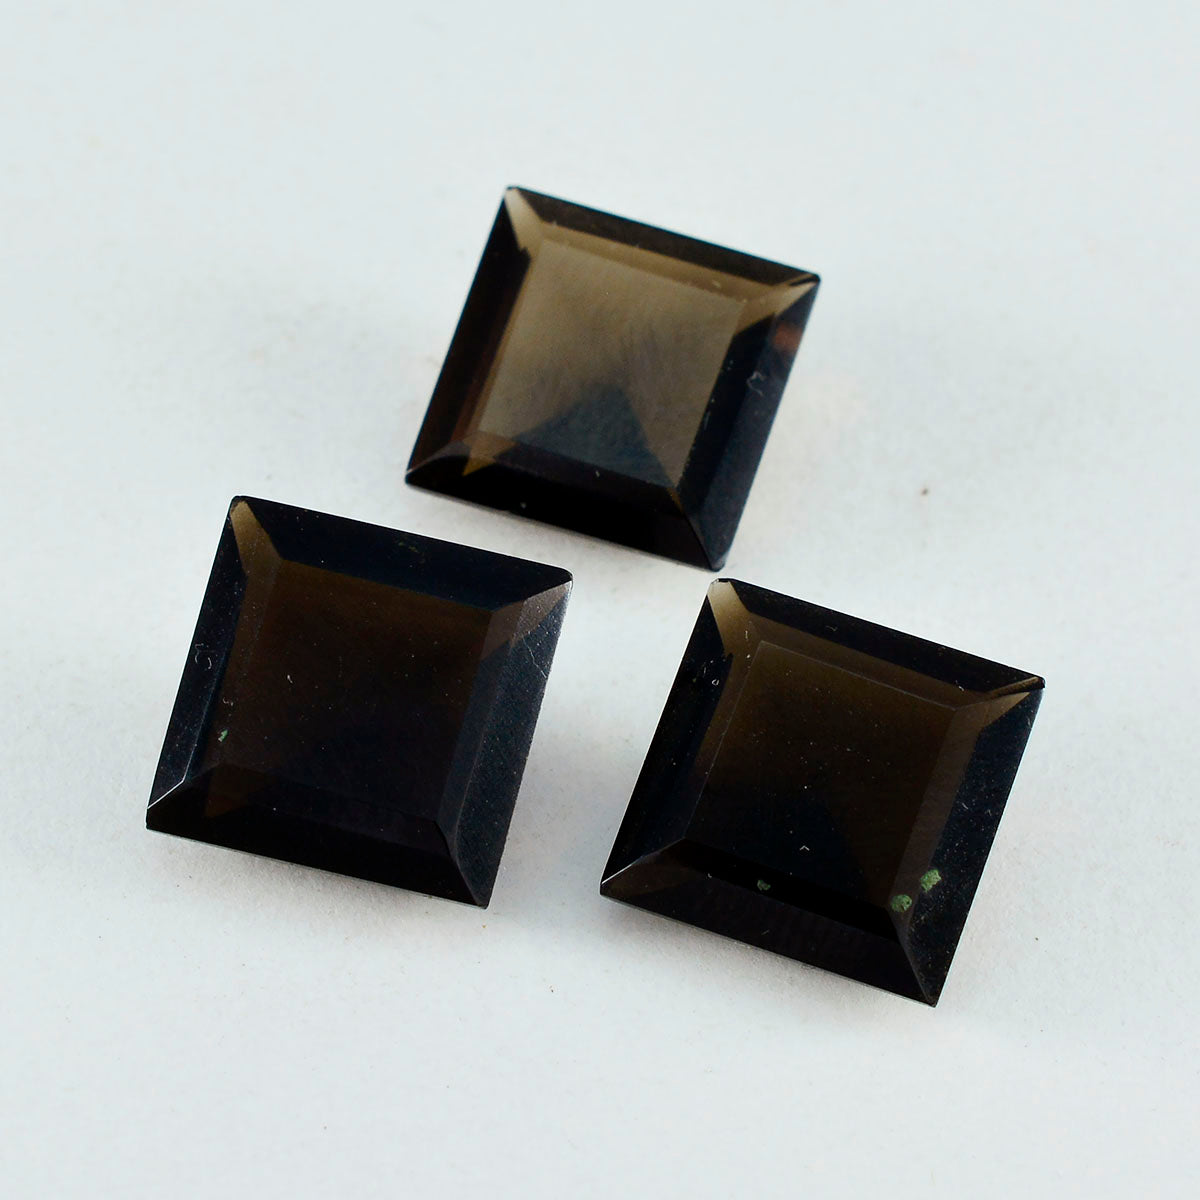 Riyogems 1PC Genuine Brown Smoky Quartz Faceted 15x15 mm Square Shape A Quality Loose Gems